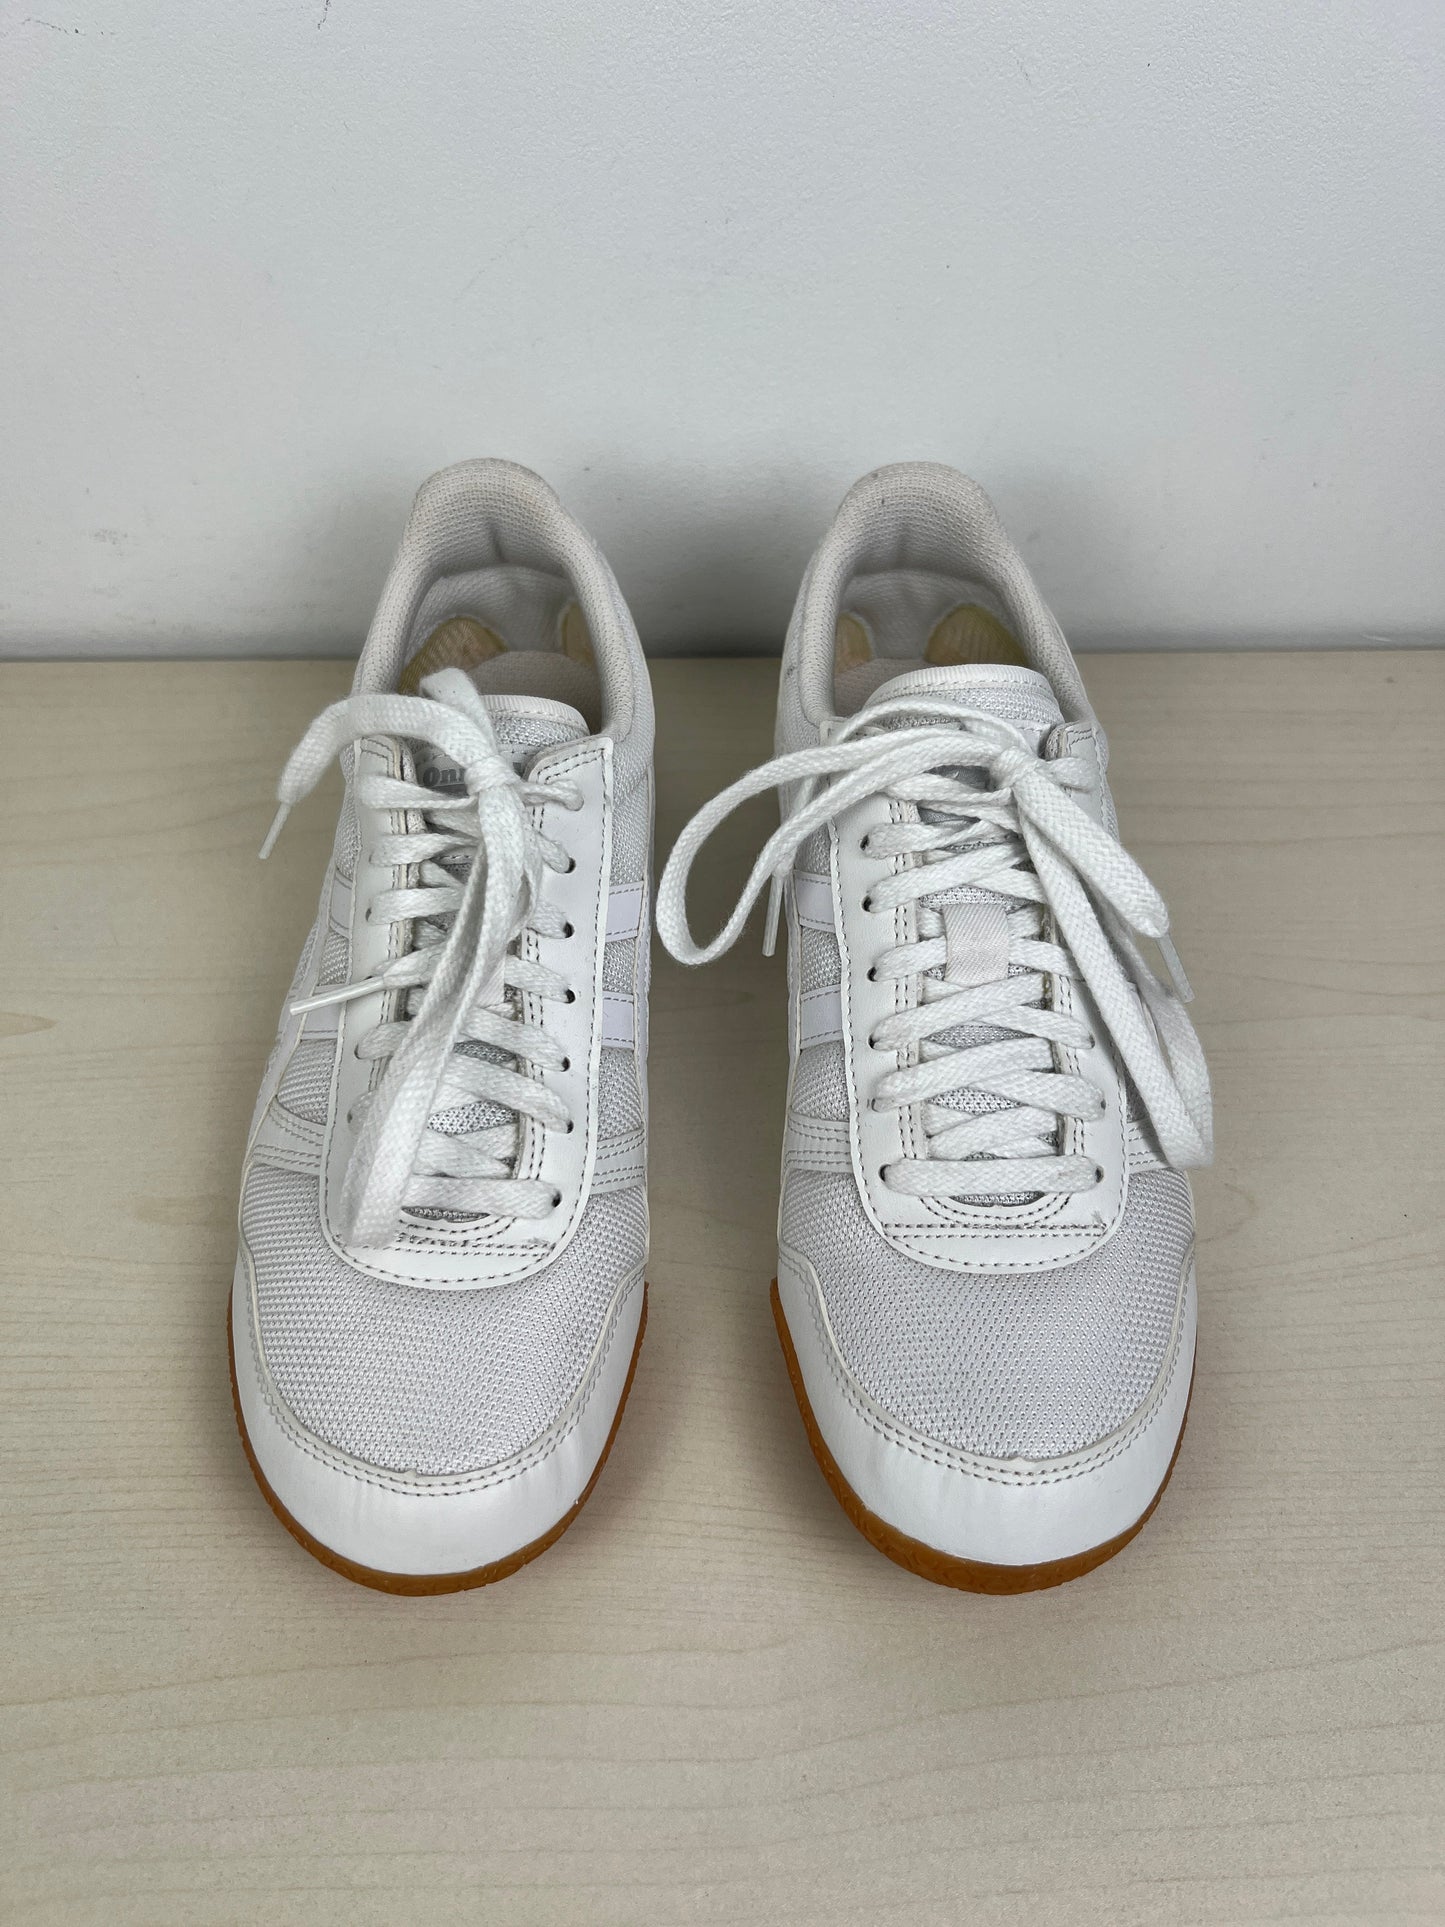 White Shoes Athletic Onitsuka, Size 5